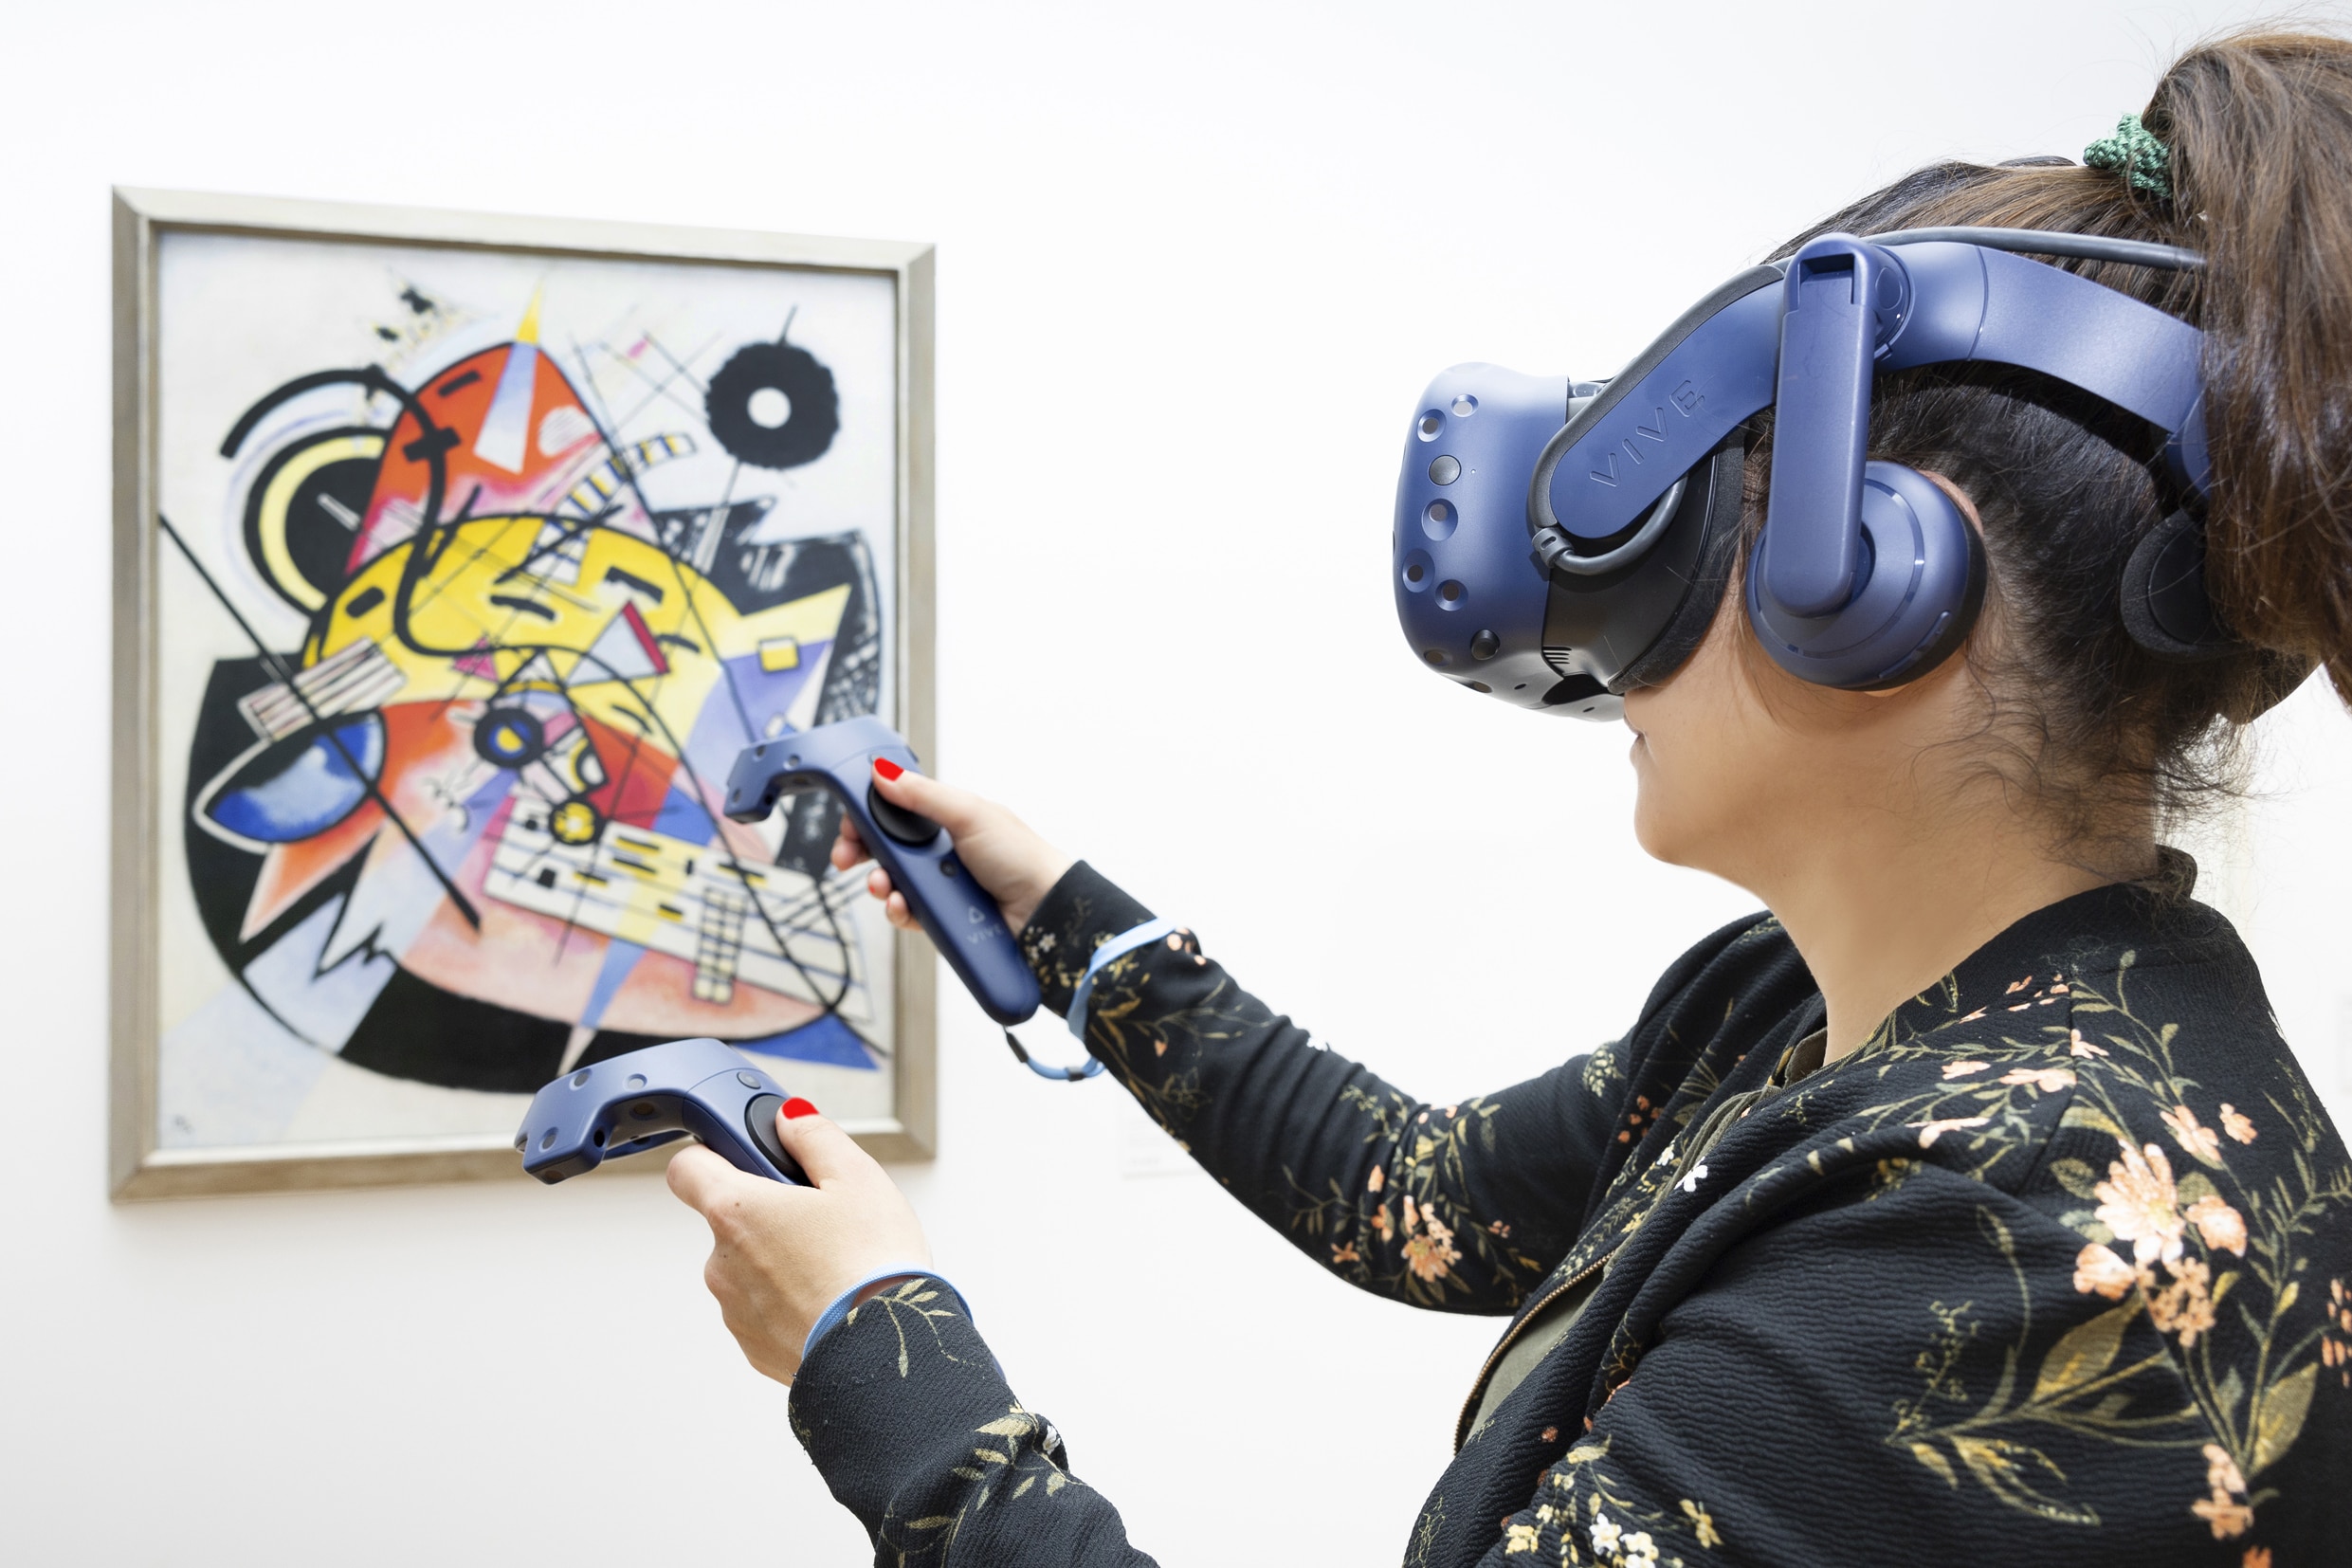 Gemälde Weißer Punkt von Kandinsky im Hintergrund und Frau mit VR-Headset und Controllern im Vordergund